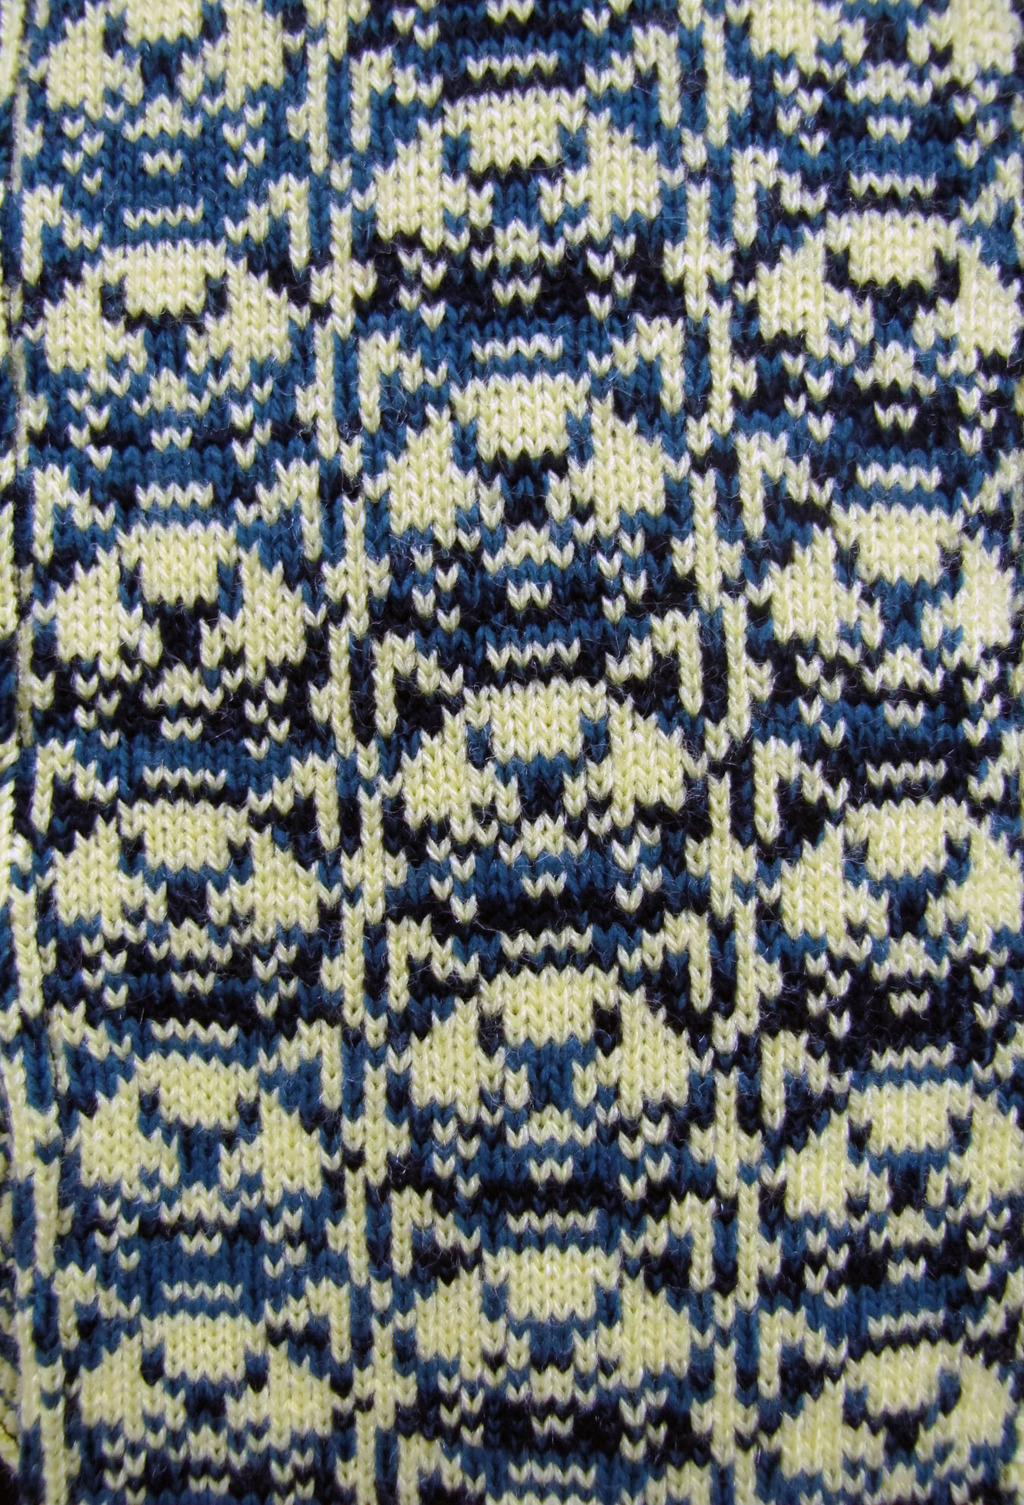 Mr Collars Knit pattern closeup